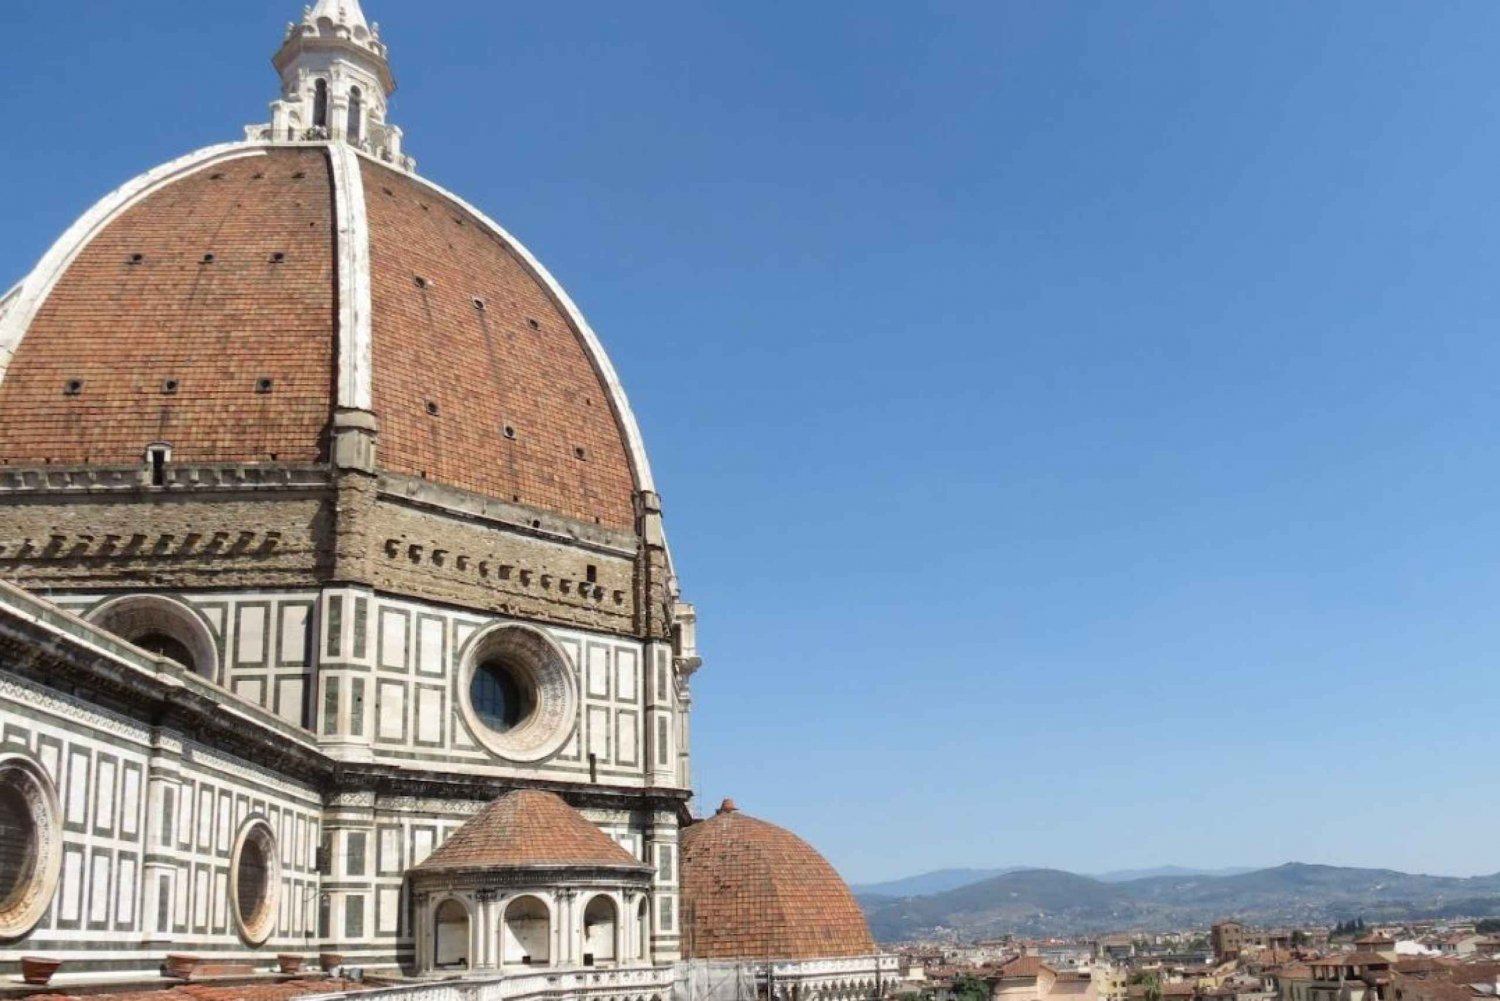 Ingressos para a Cúpula de Brunelleschi em Florença